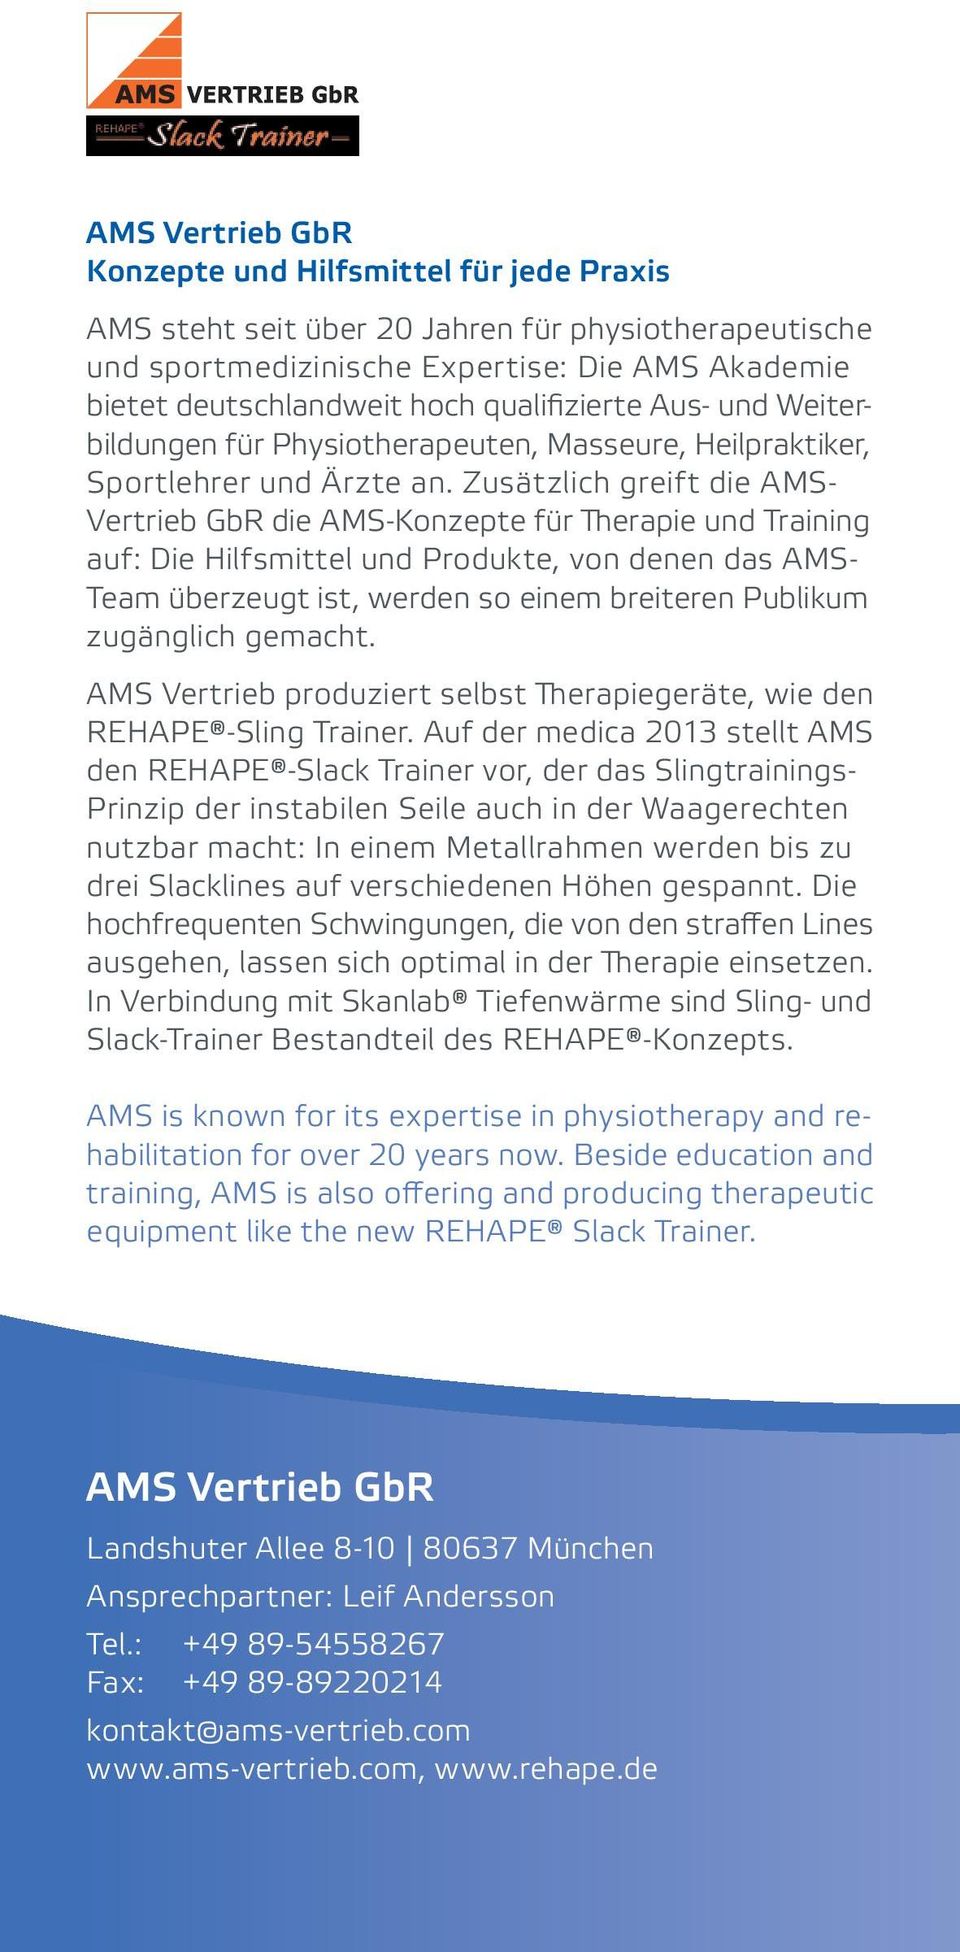 Zusätzlich greift die AMS- Vertrieb GbR die AMS-Konzepte für Therapie und Training auf: Die Hilfsmittel und Produkte, von denen das AMS- Team überzeugt ist, werden so einem breiteren Publikum